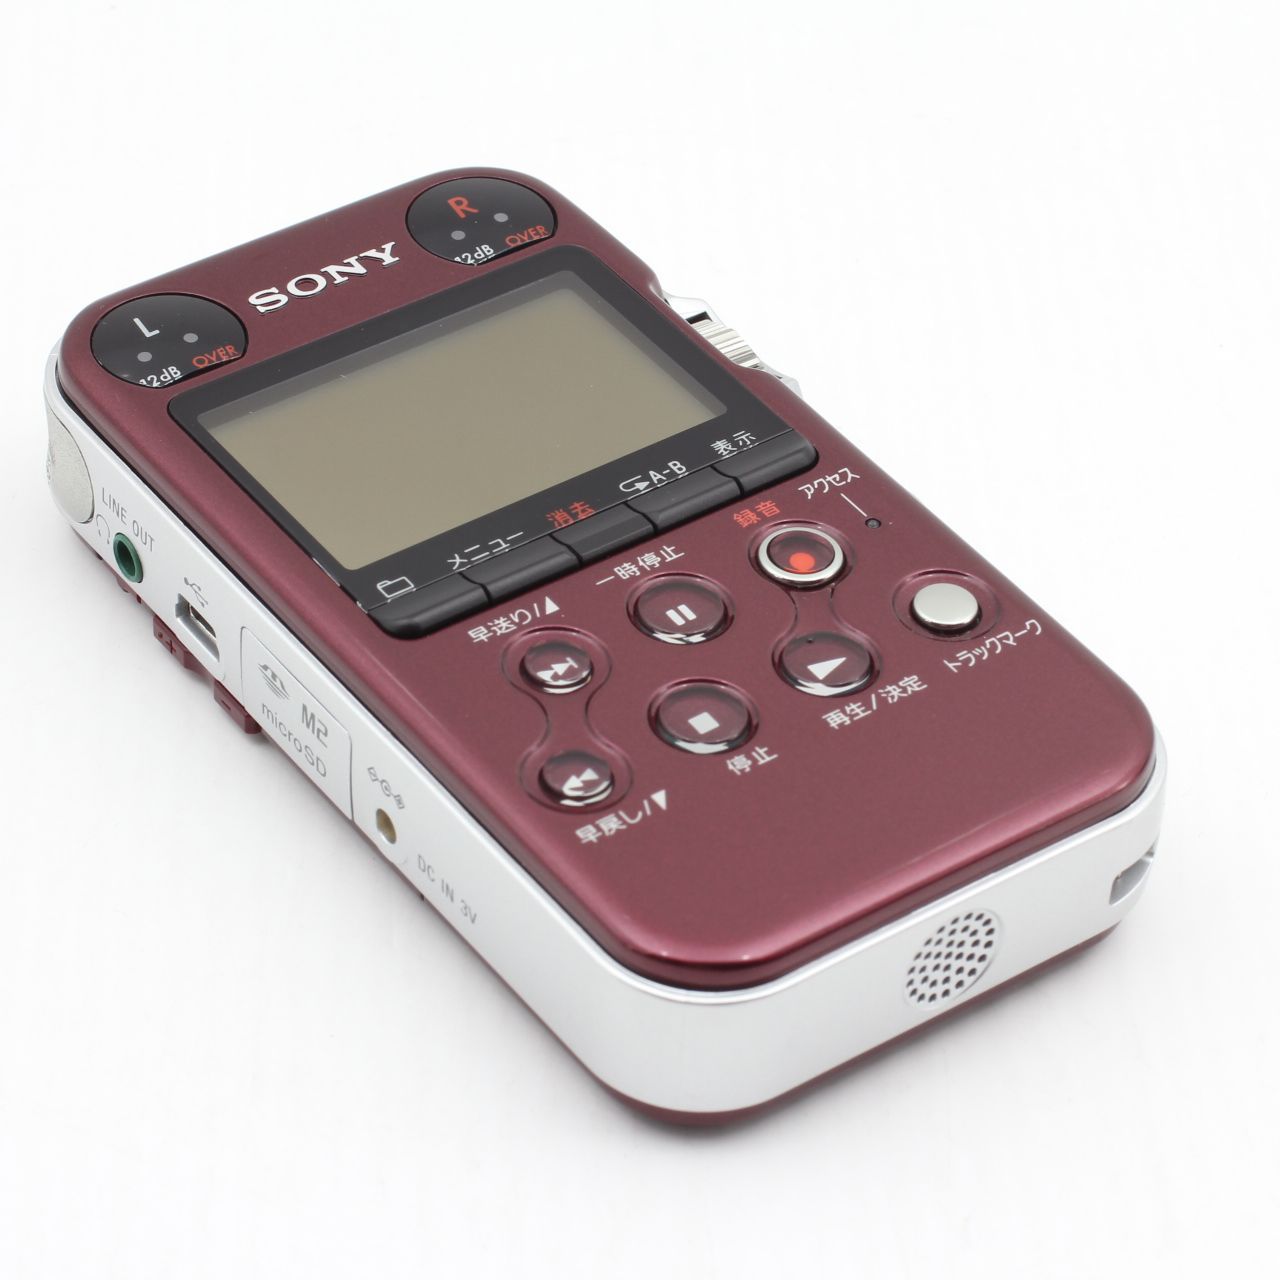 SONY リニアPCMレコーダー PCM-M10 レッド - ポータブルプレーヤー